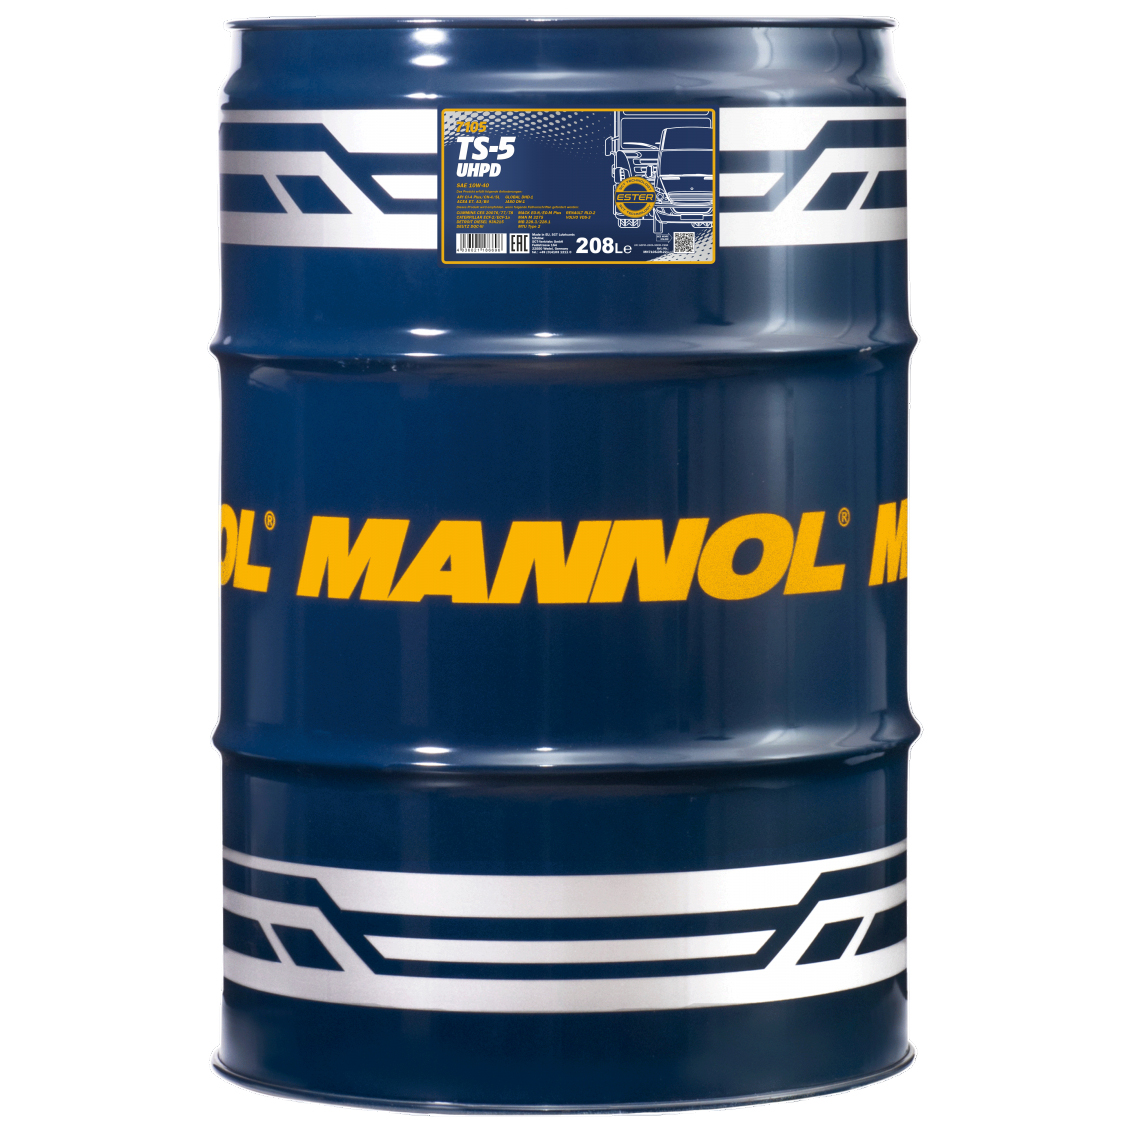 Моторное масло для грузовых автомобилей <<MANNOL 7105>> TS-5 UHPD10W40, полусинтетика, 208